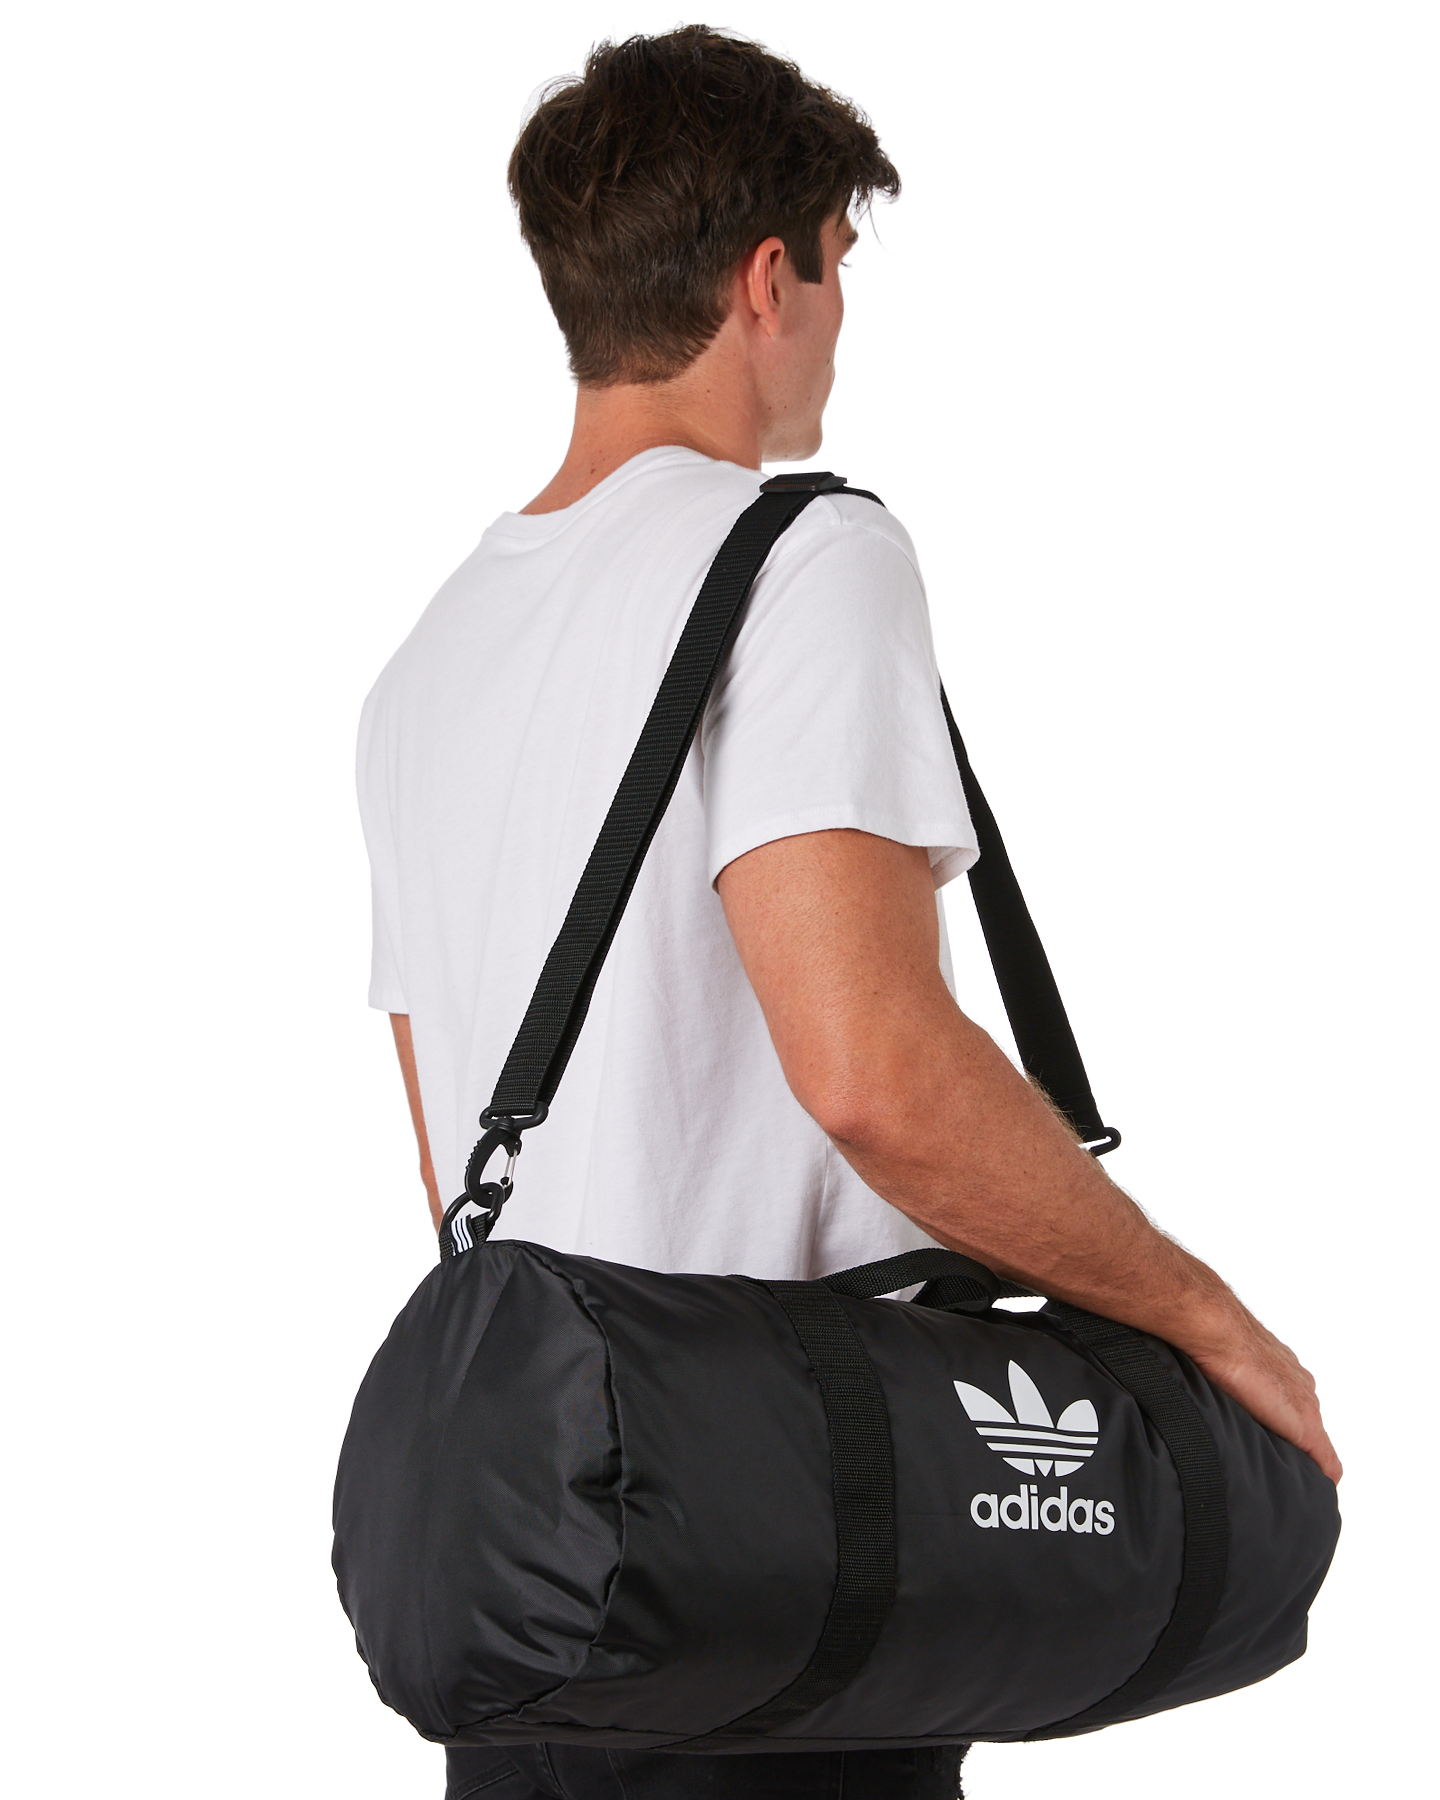 Adidas Ac Duffle Bag - Black | SurfStitch